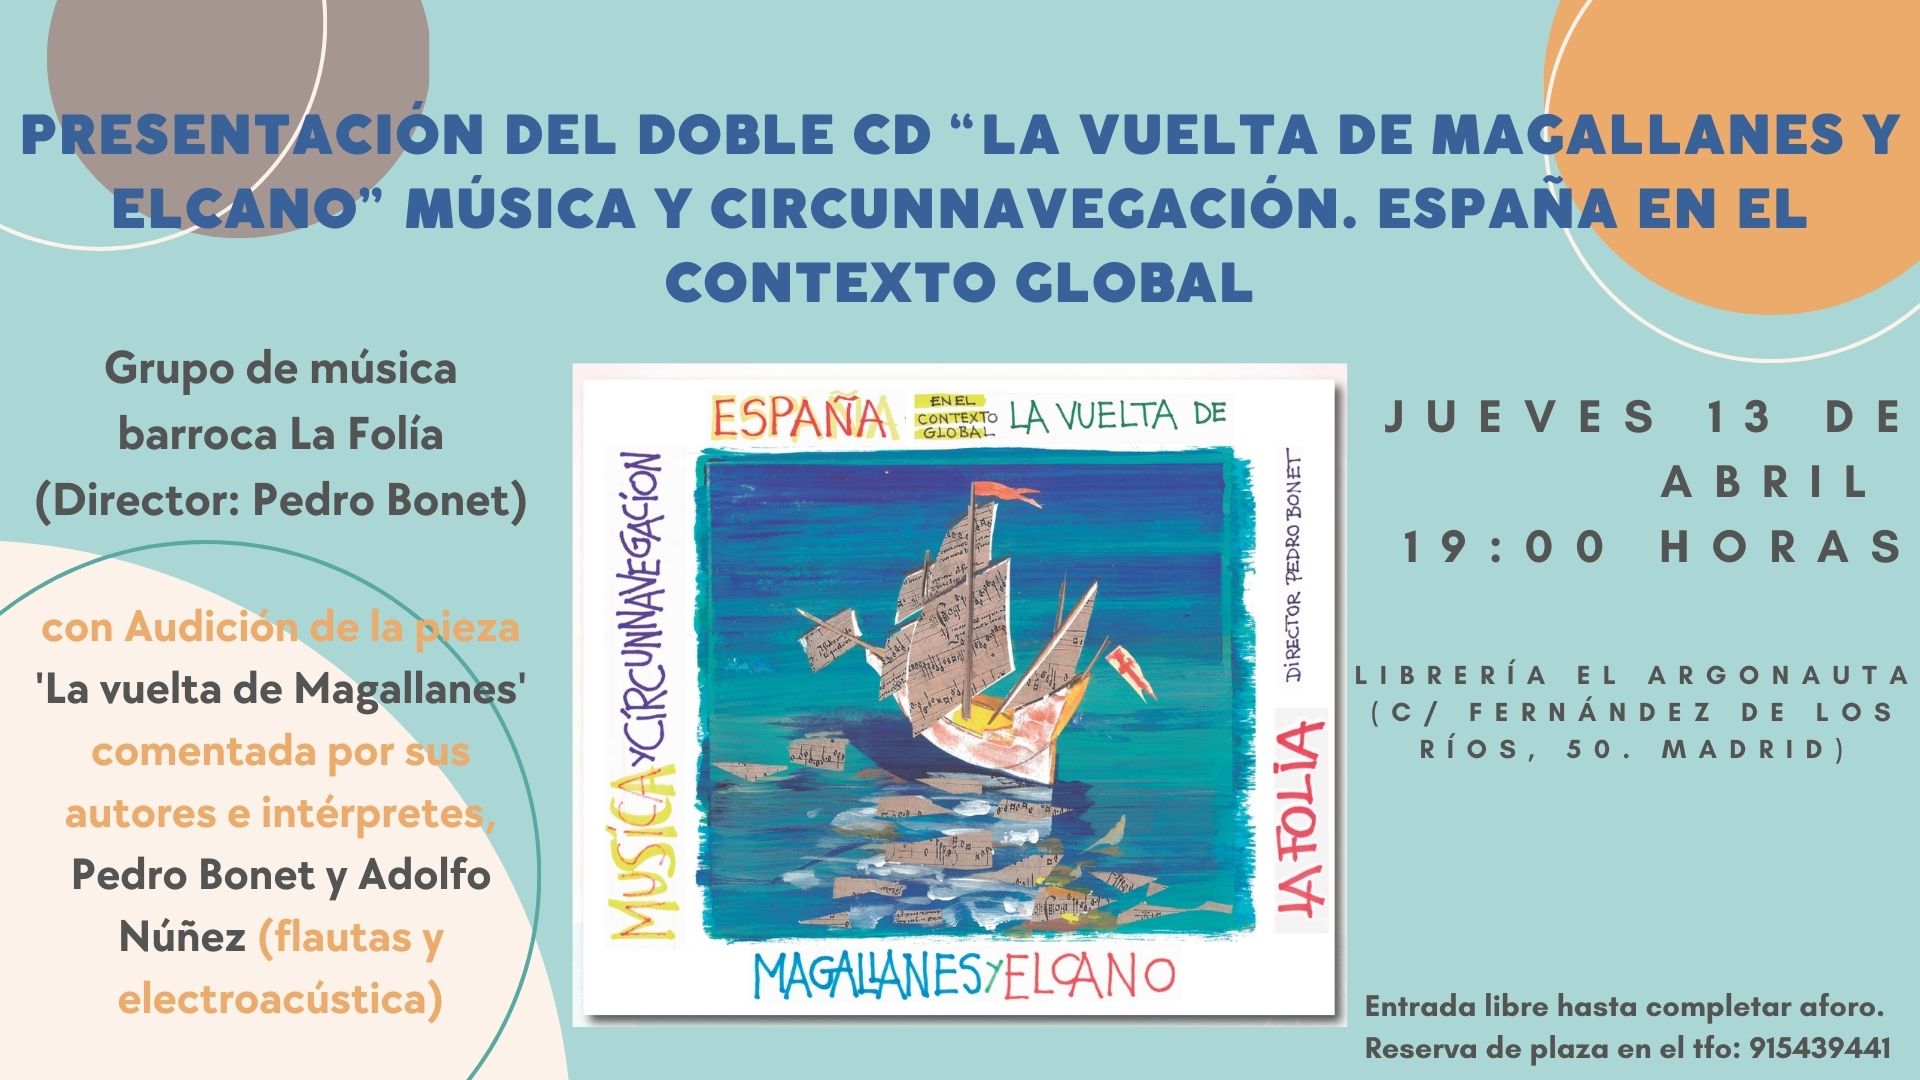 Presentación del libro disco 'La vuelta de Magallanes y Elcano: Música y circunnavegación. España en el contexto global' del grupo de música barroca La Folía